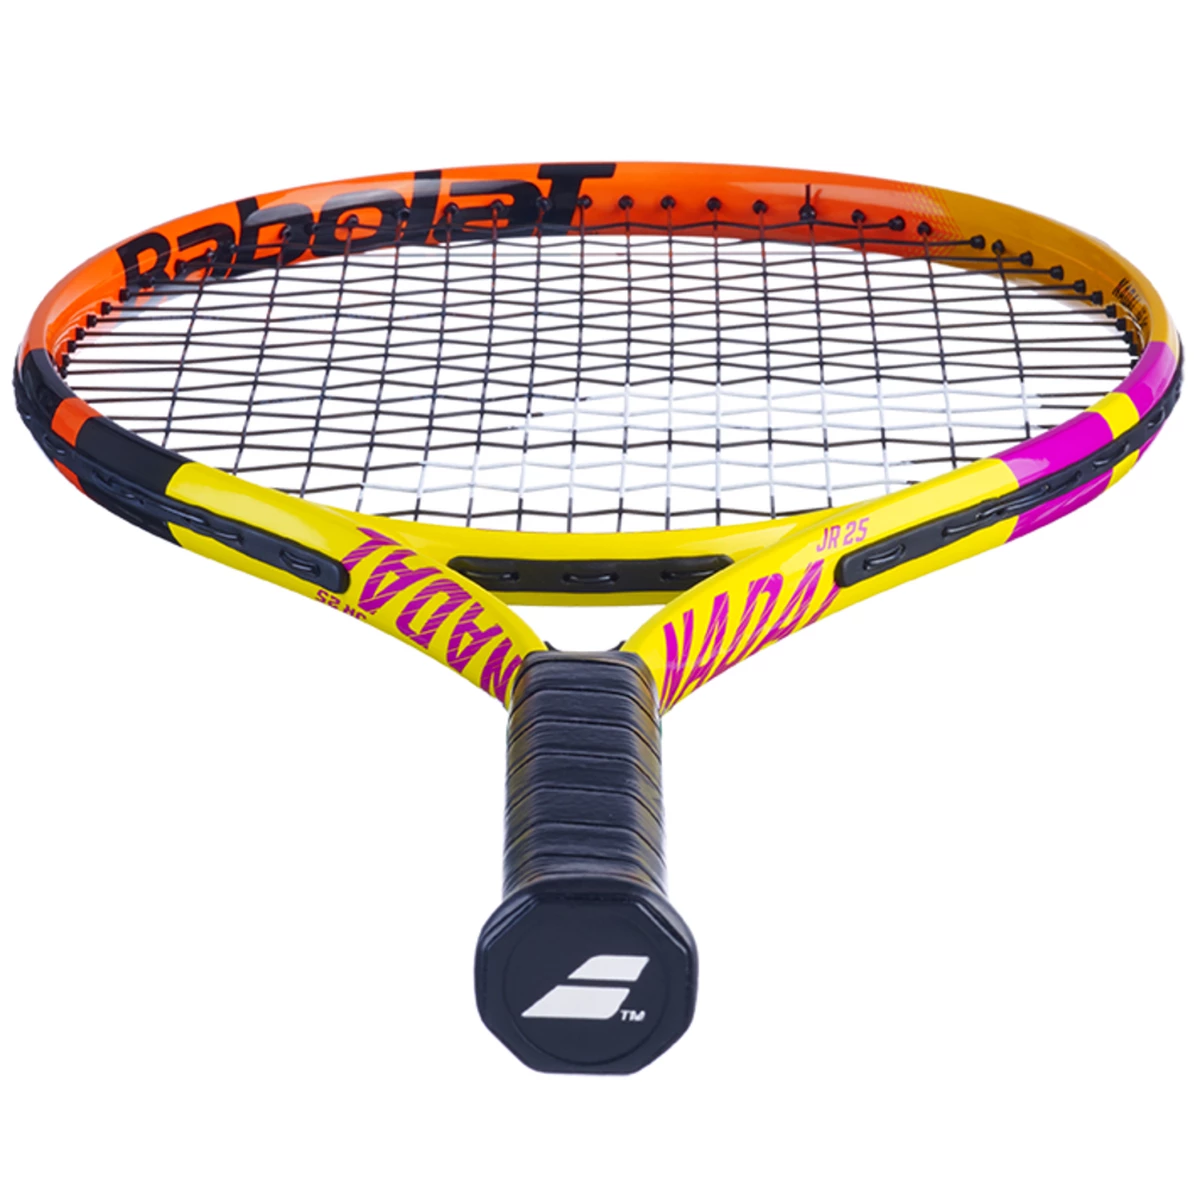 Babolat Junior 25 S - Tennisrackets - Tennis - van den Broek / Biggelaar